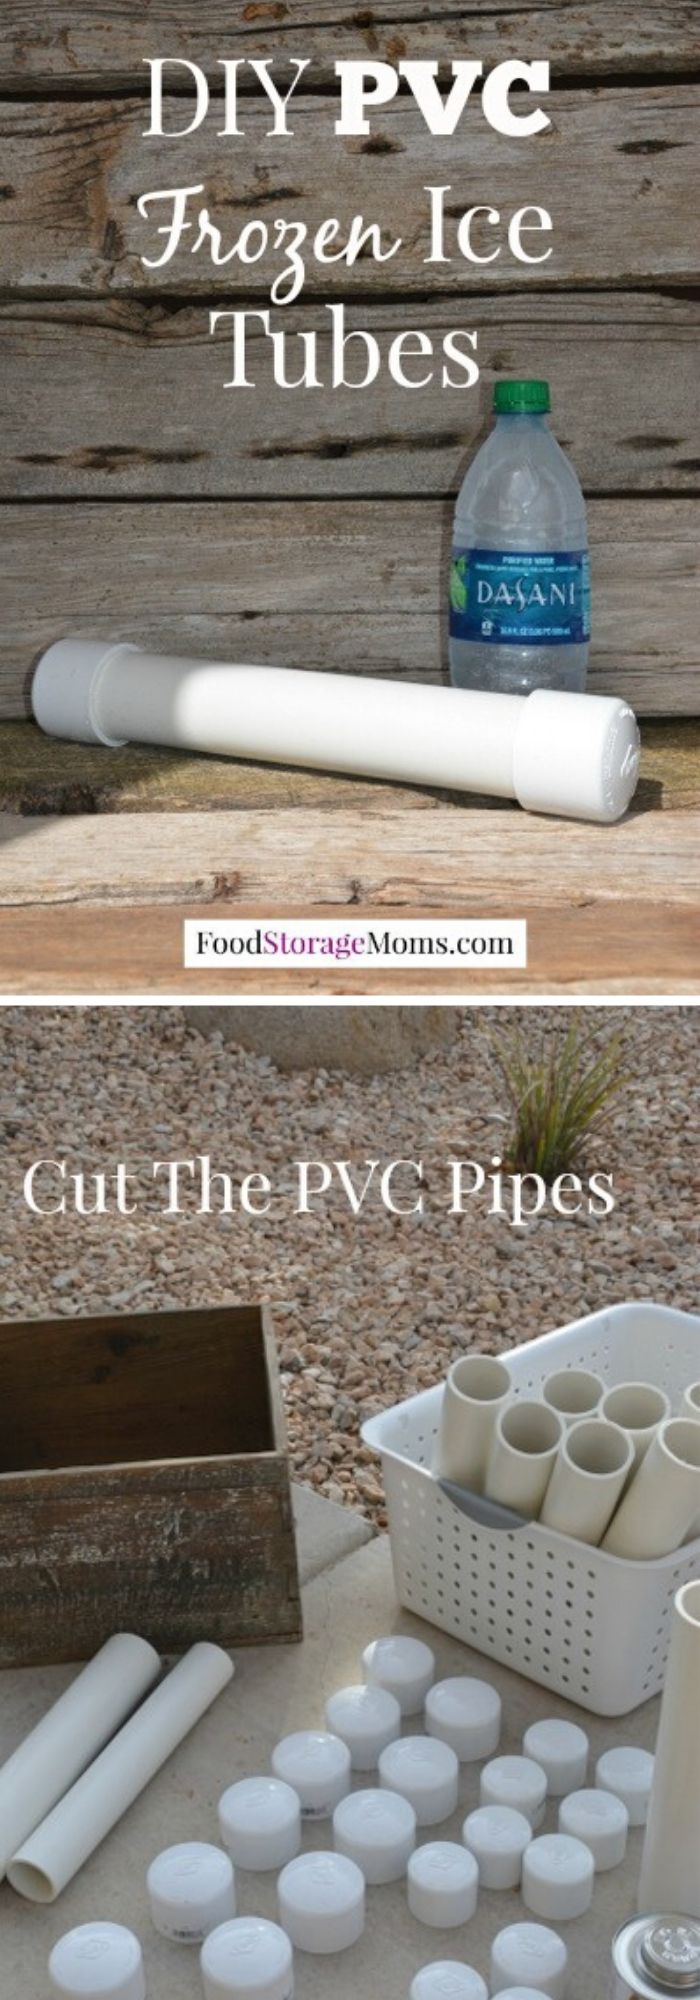 9 pvc pipe storage ideas